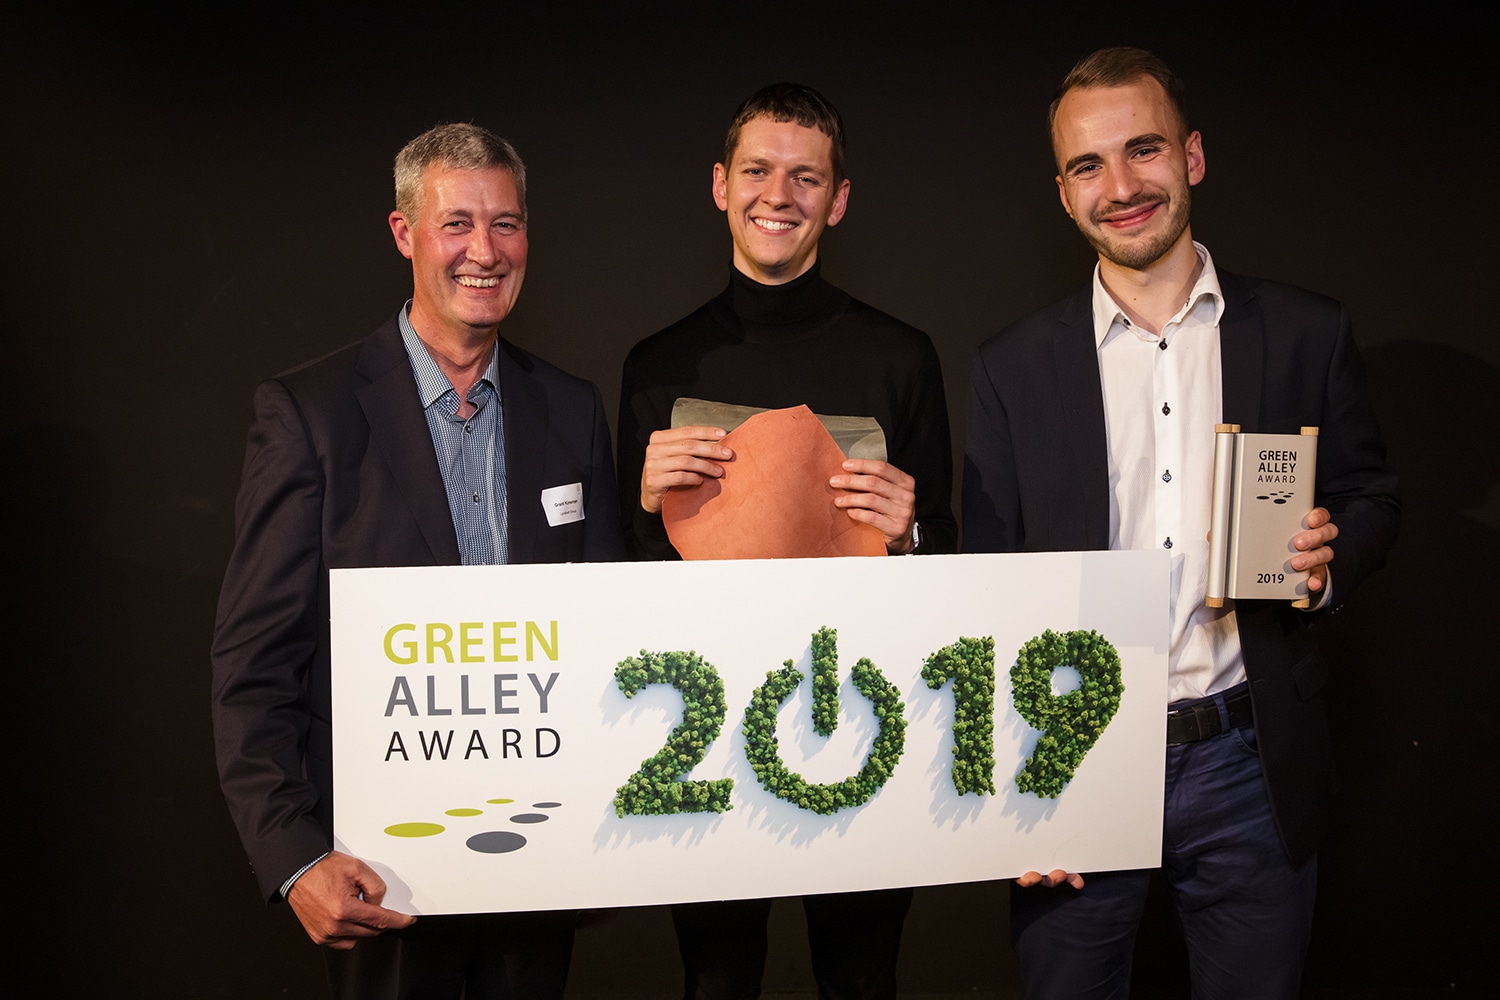 Green-Alley-Award-winner-2019